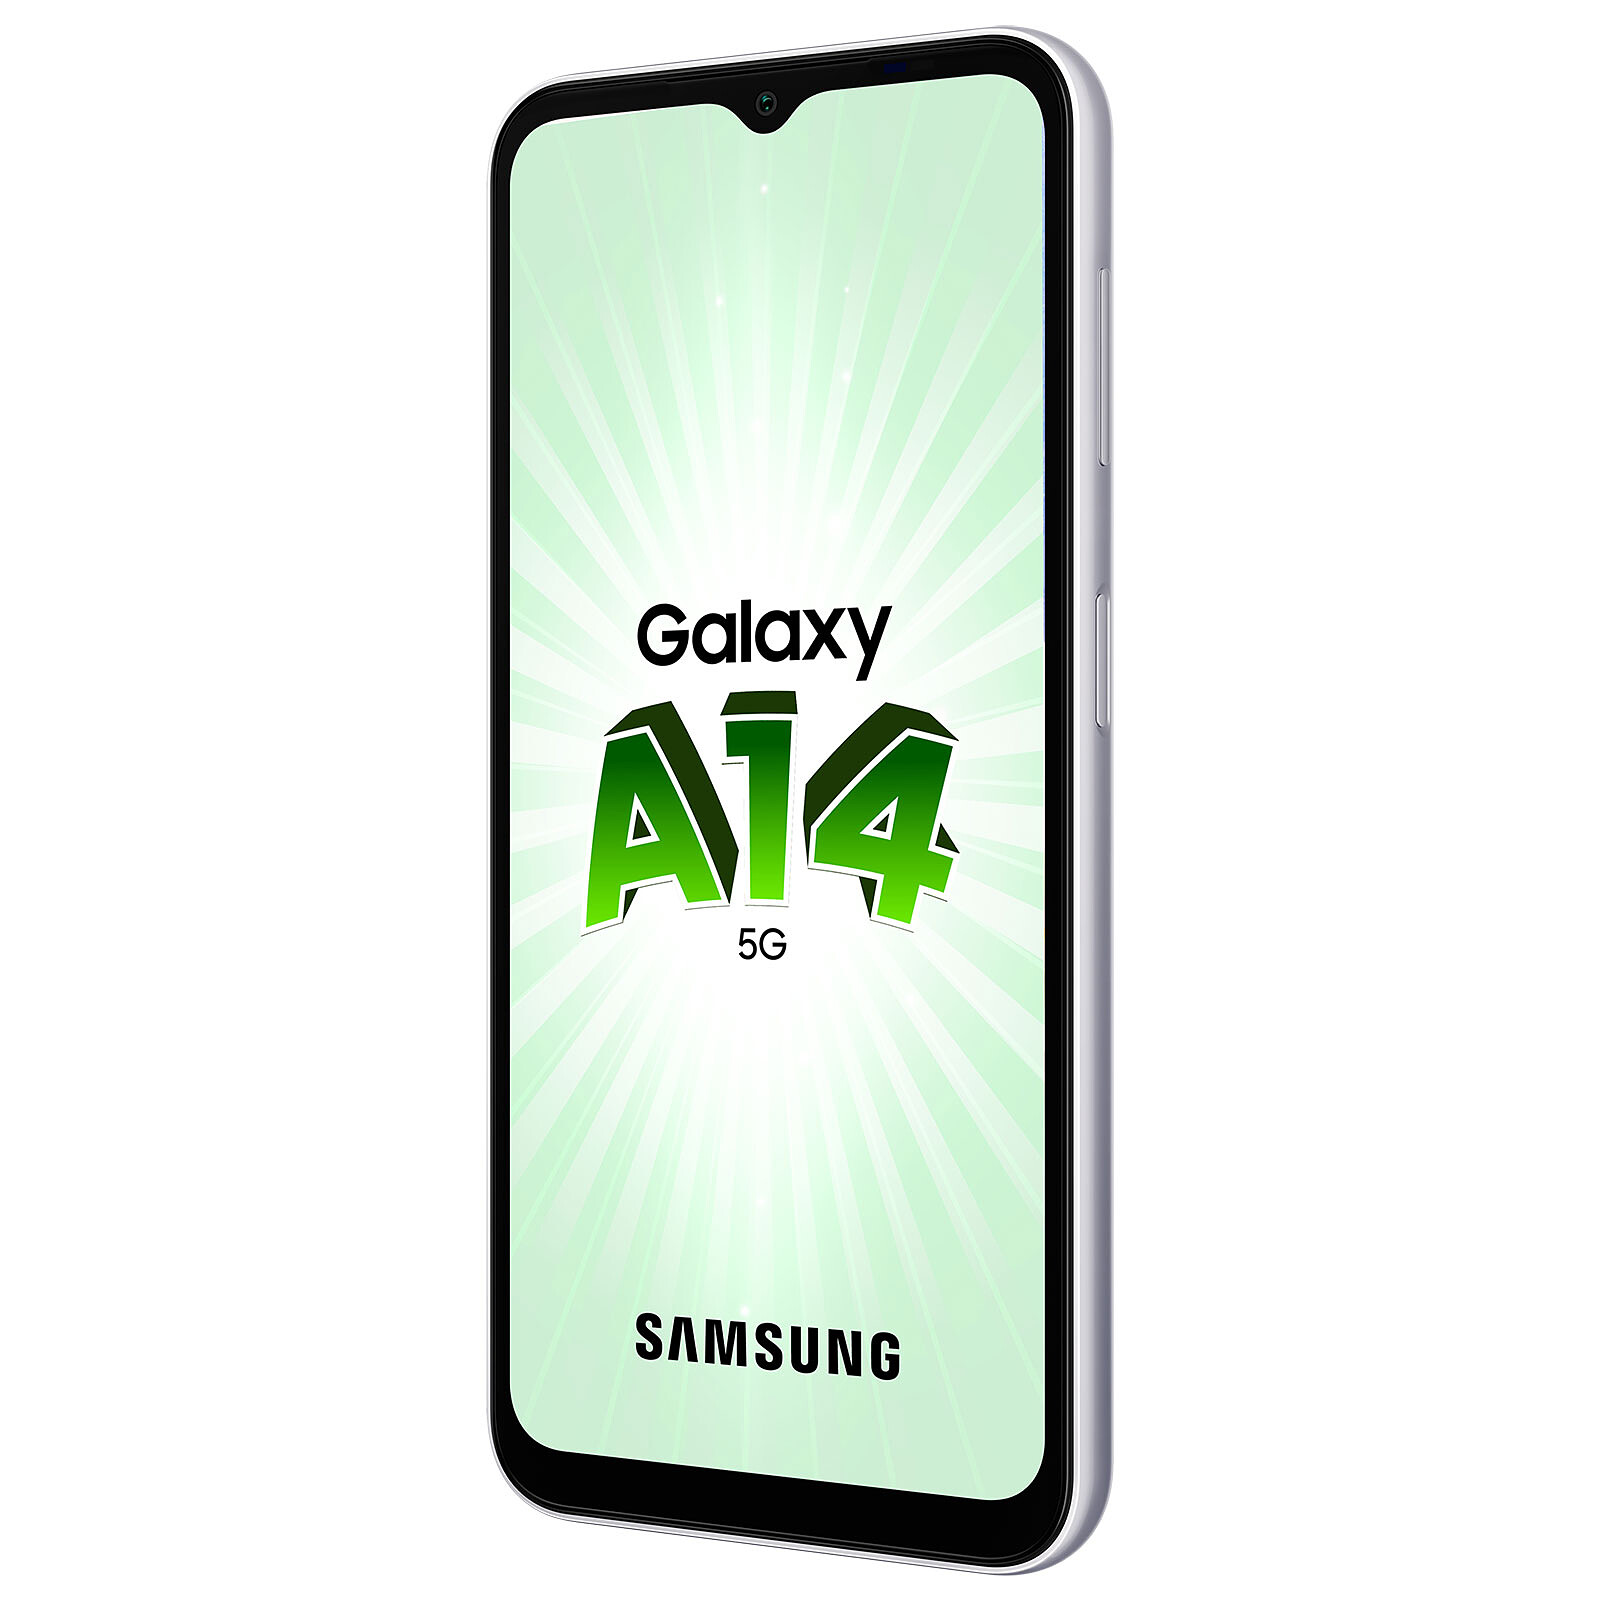 Samsung Galaxy A14 5G Plata (4GB / 64GB) - Móvil y smartphone - LDLC